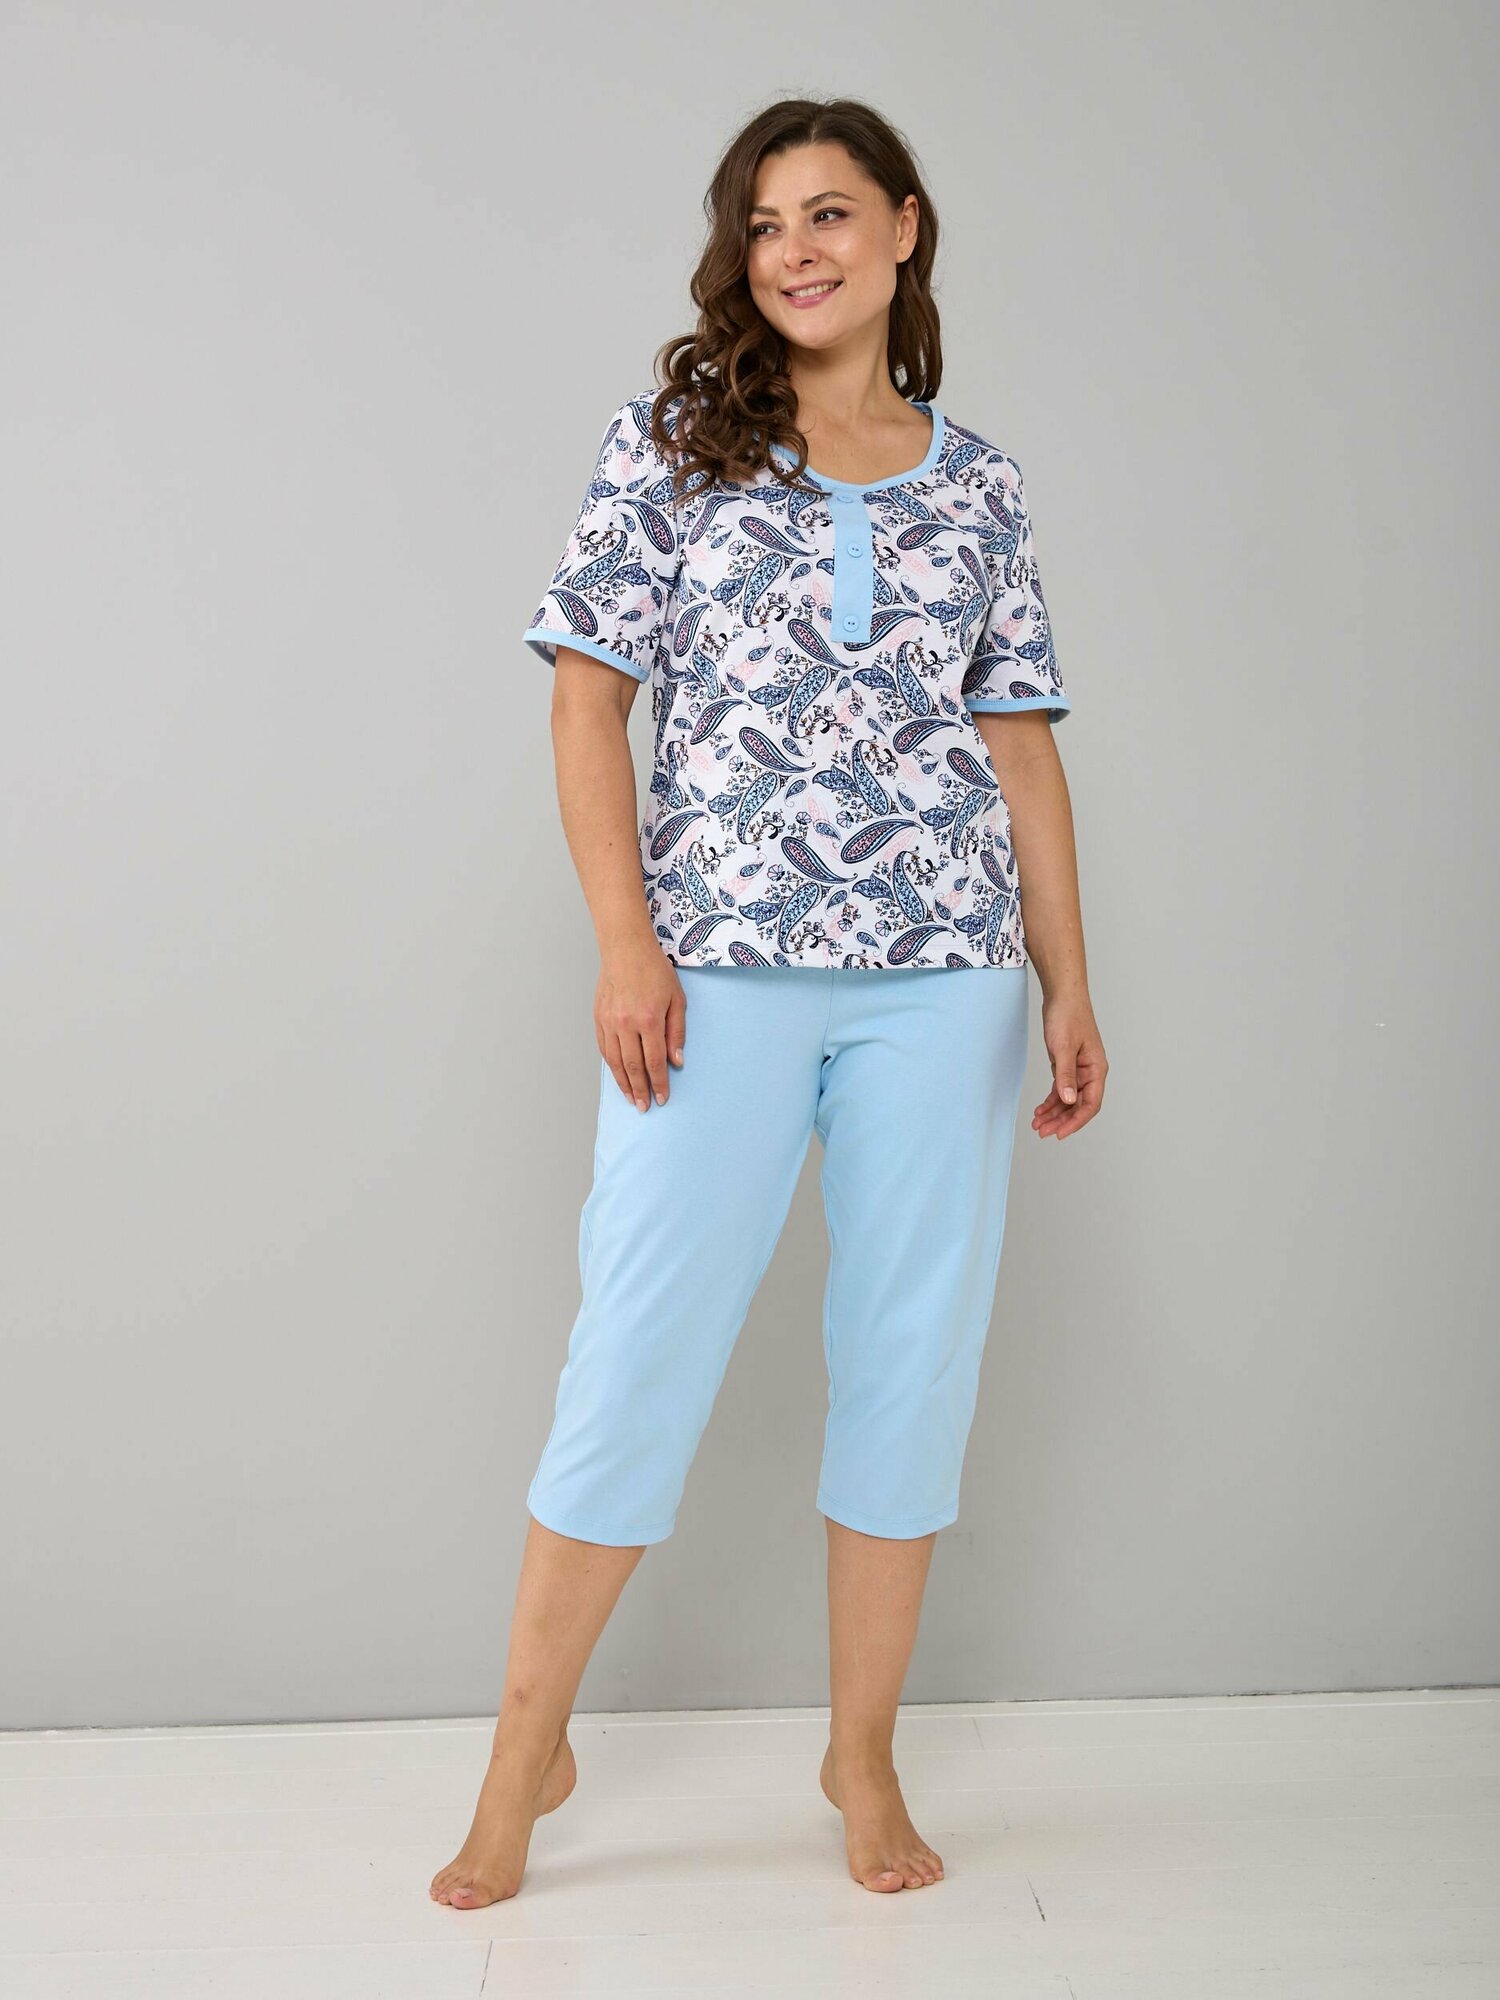 Пижама Алтекс, бриджи, футболка, короткий рукав, размер 48, голубой - фотография № 2